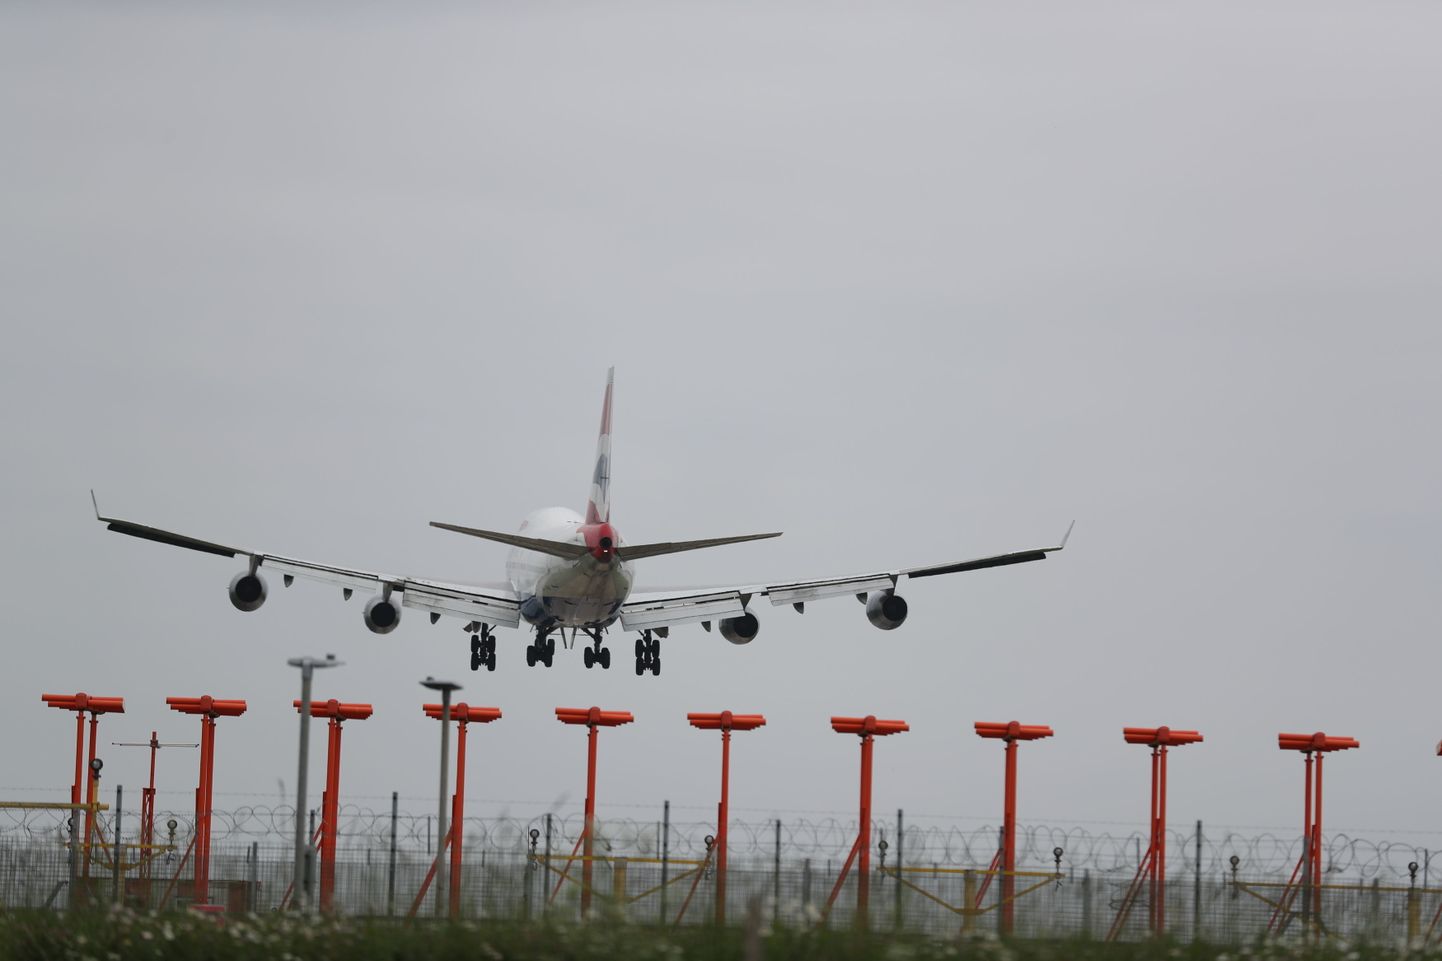 Lennuk maandumas täna Heathrow lennuväljale.